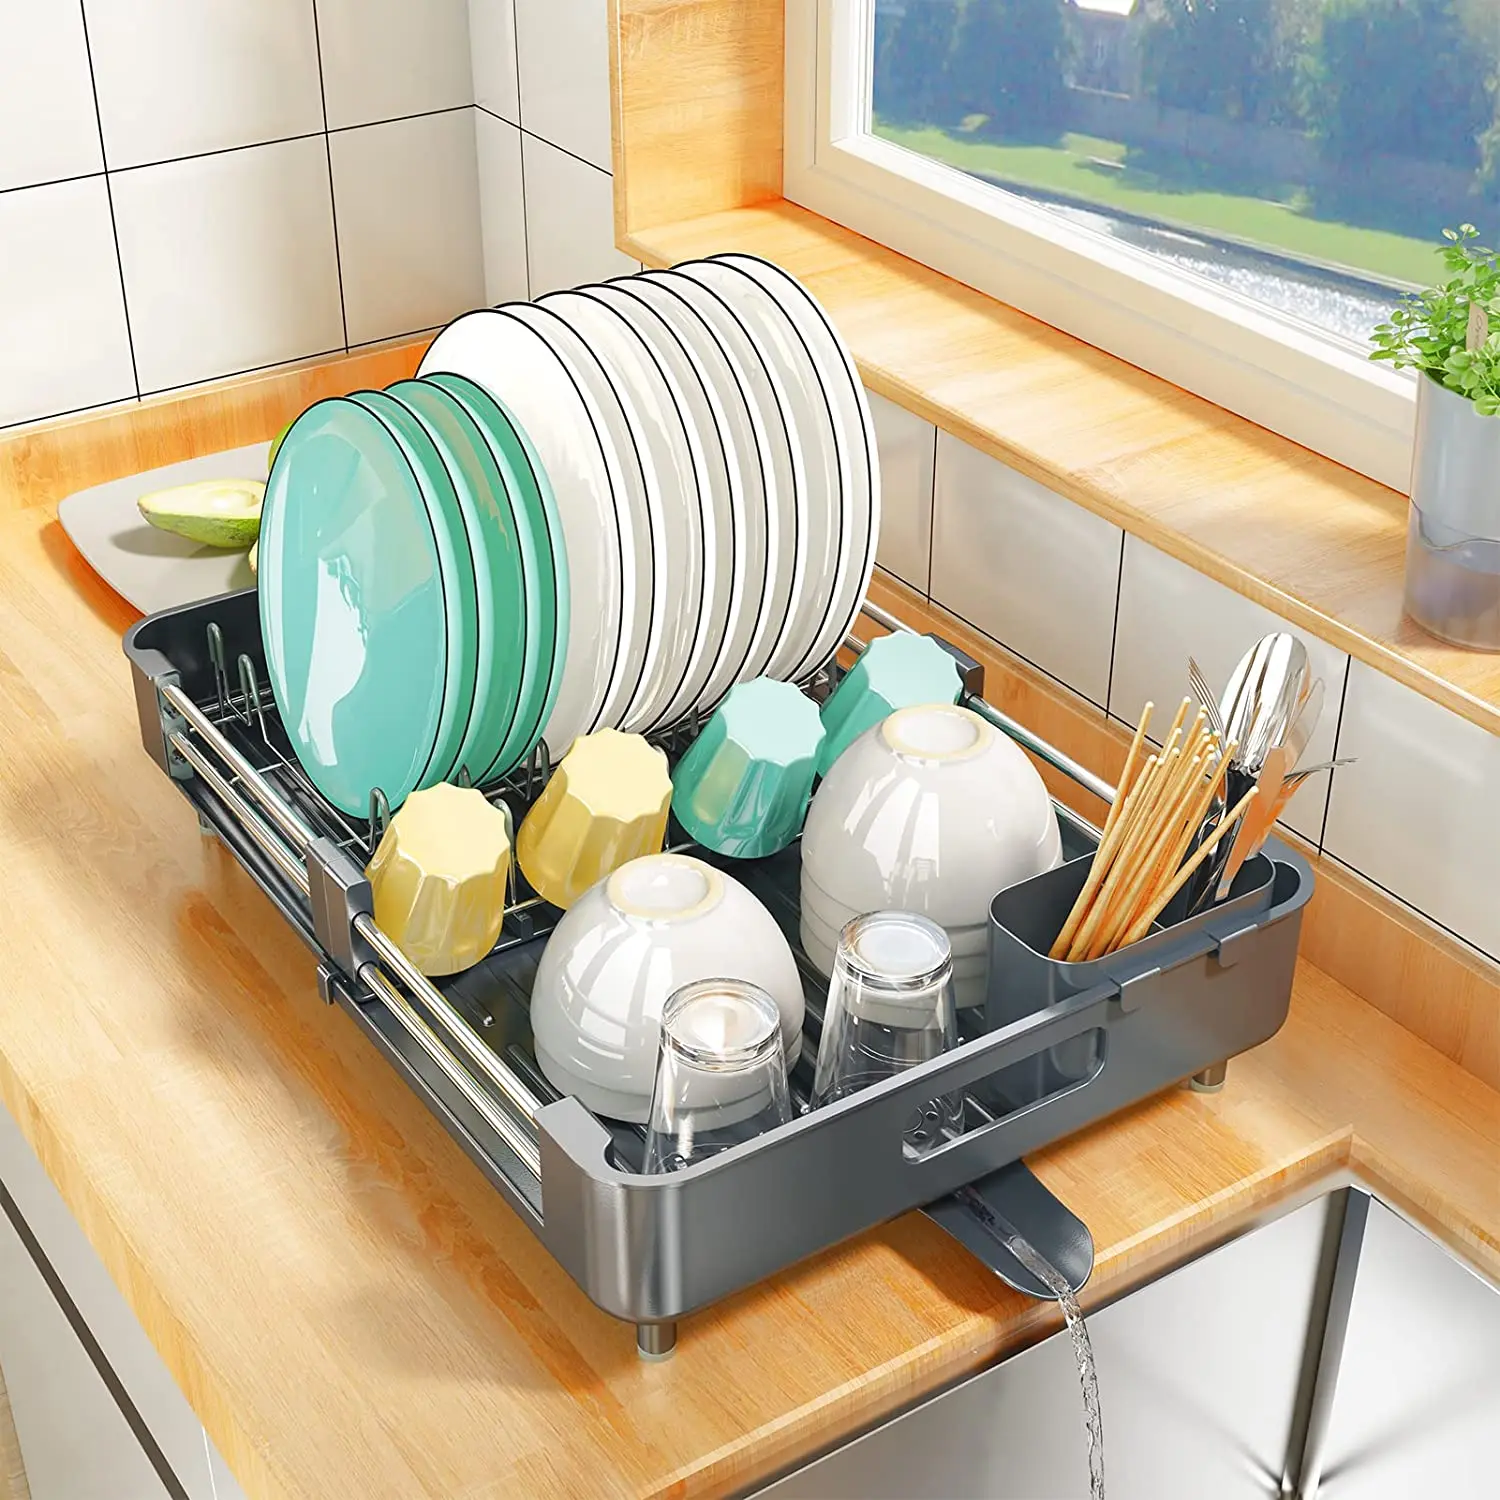 食器乾燥ラック、キッチン皿水切りラック拡張可能なステンレス鋼シンクオーガナイザー皿ラックとドラインボードキッチンオーガナイザー